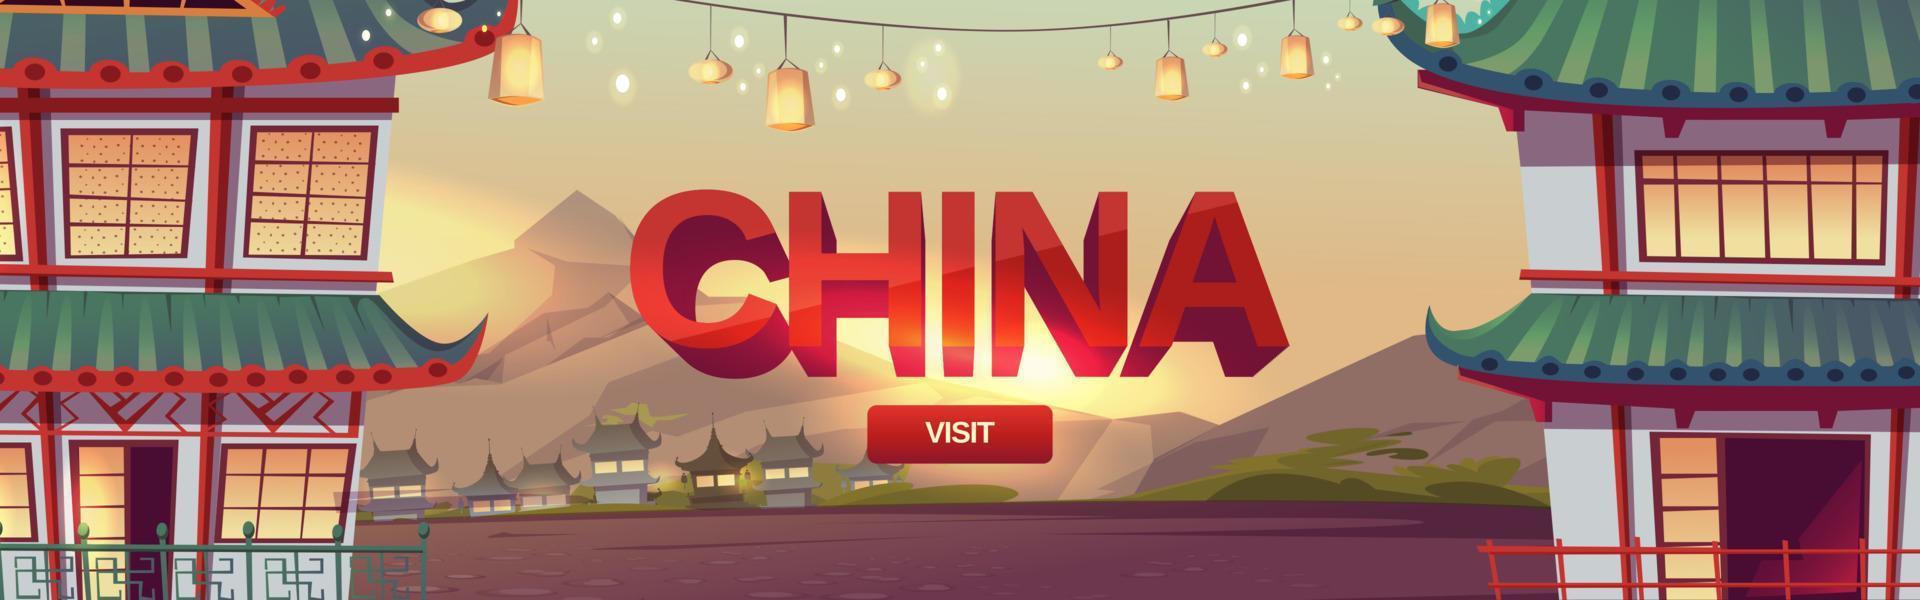 bezoek China web banier, reizen naar Chinese dorp vector